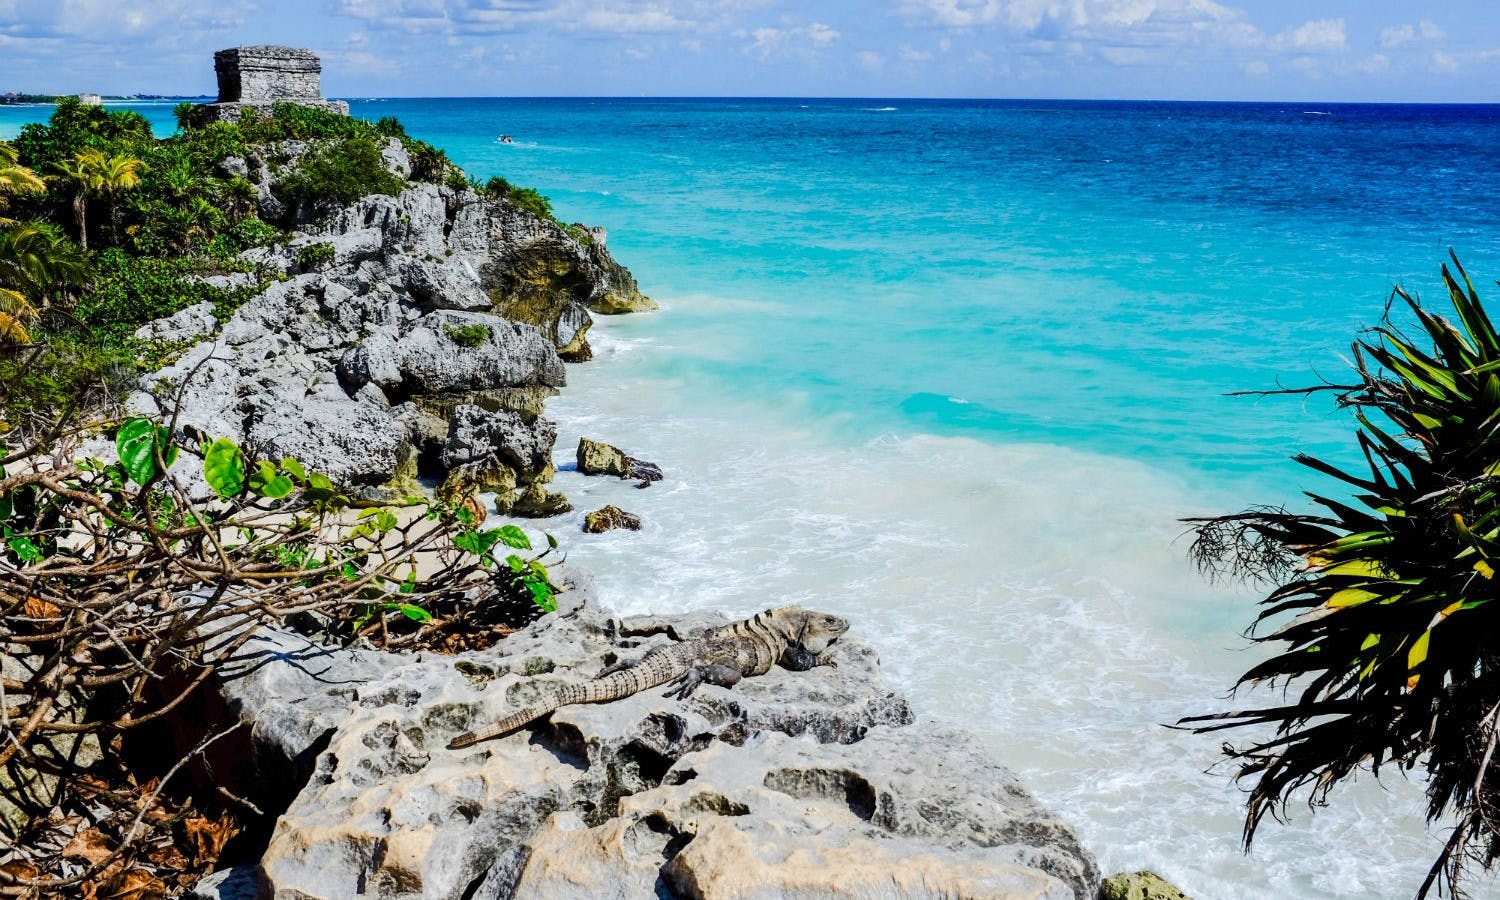 Excursão Tulum Discovery saindo de Cancun e Riviera Maya